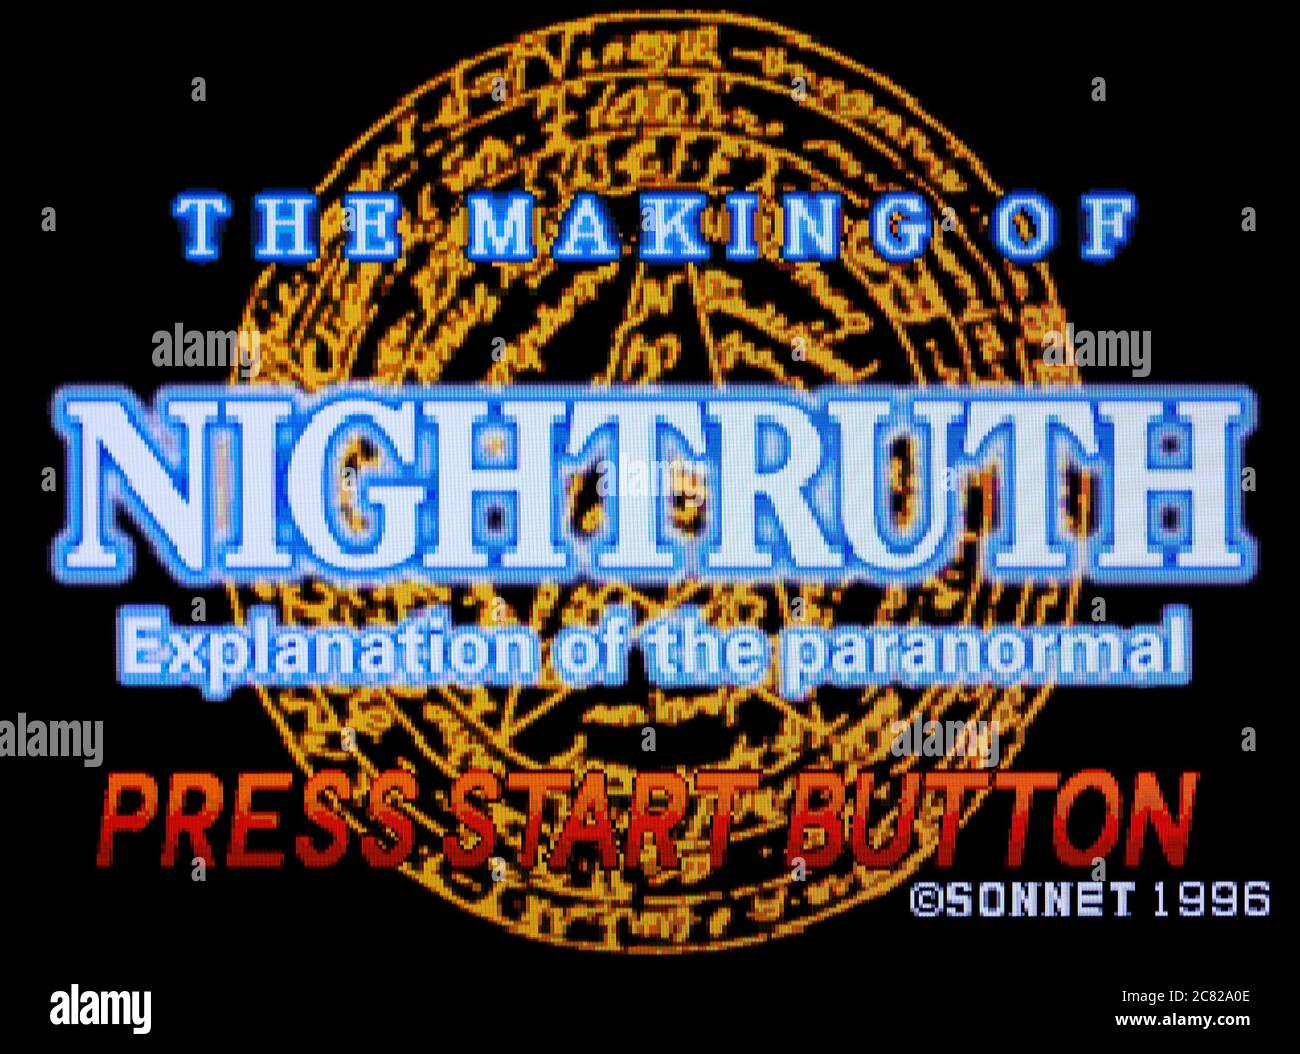 Nightruth - spiegazione del Paranormale - la realizzazione della Nightruth - sega Saturn Videogame - solo per uso editoriale Foto Stock